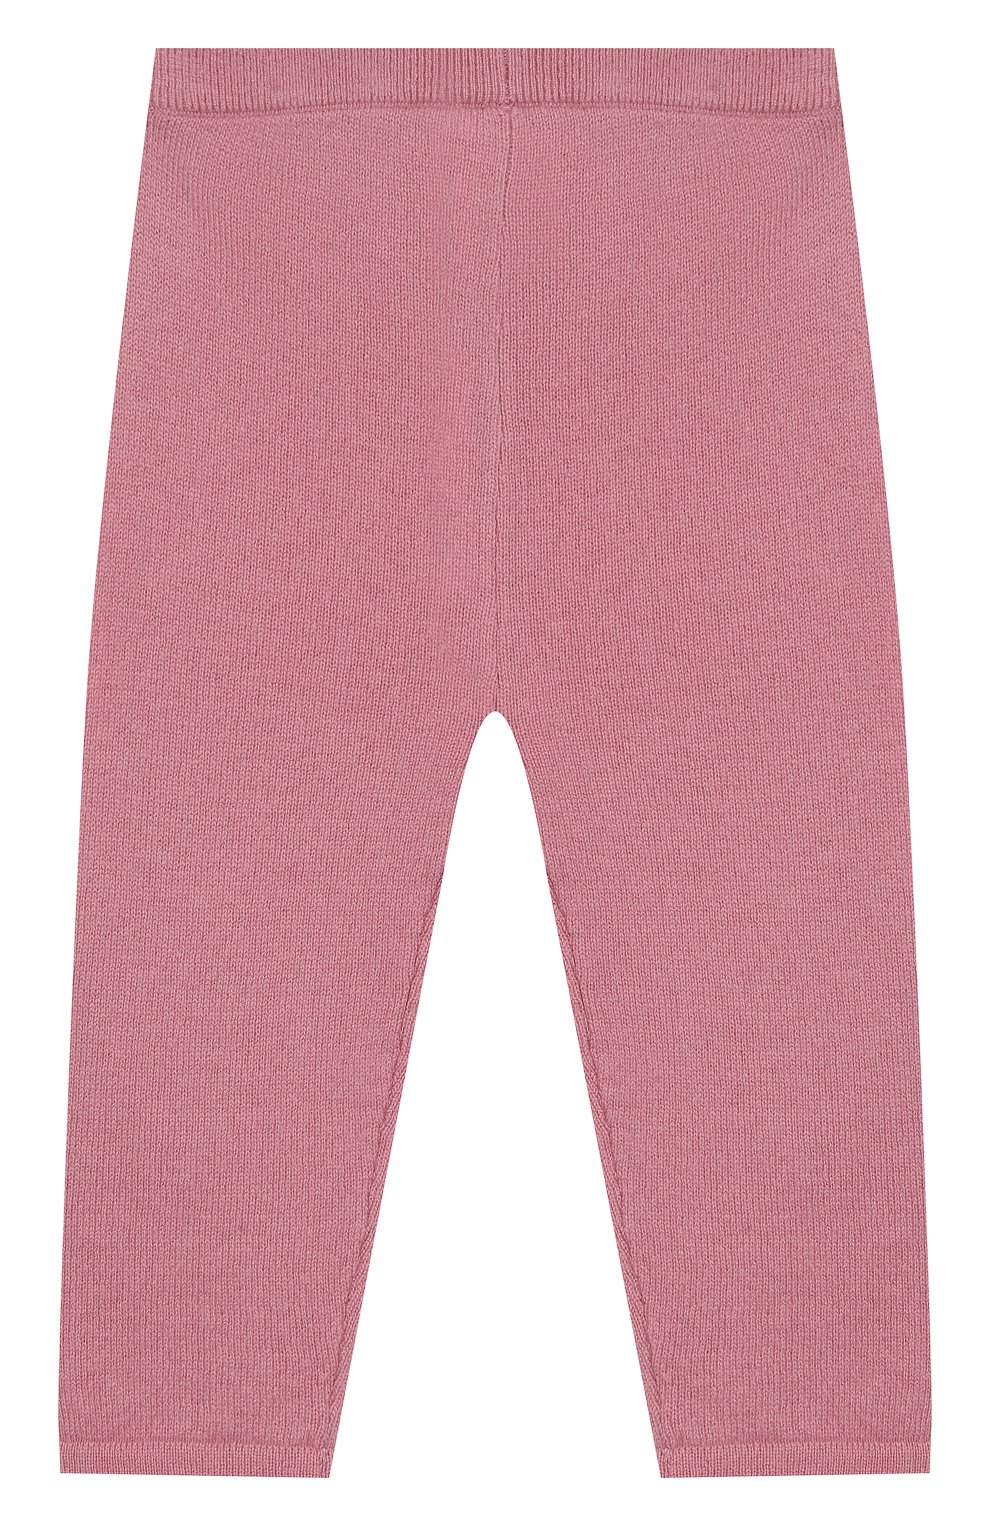 Детские каш�емировые брюки LES LUTINS розового цвета, арт. 20E001/LEGGING | Фото 2 (Материал внешний: Шерсть, Кашемир; Кросс-КТ НВ: Брюки)